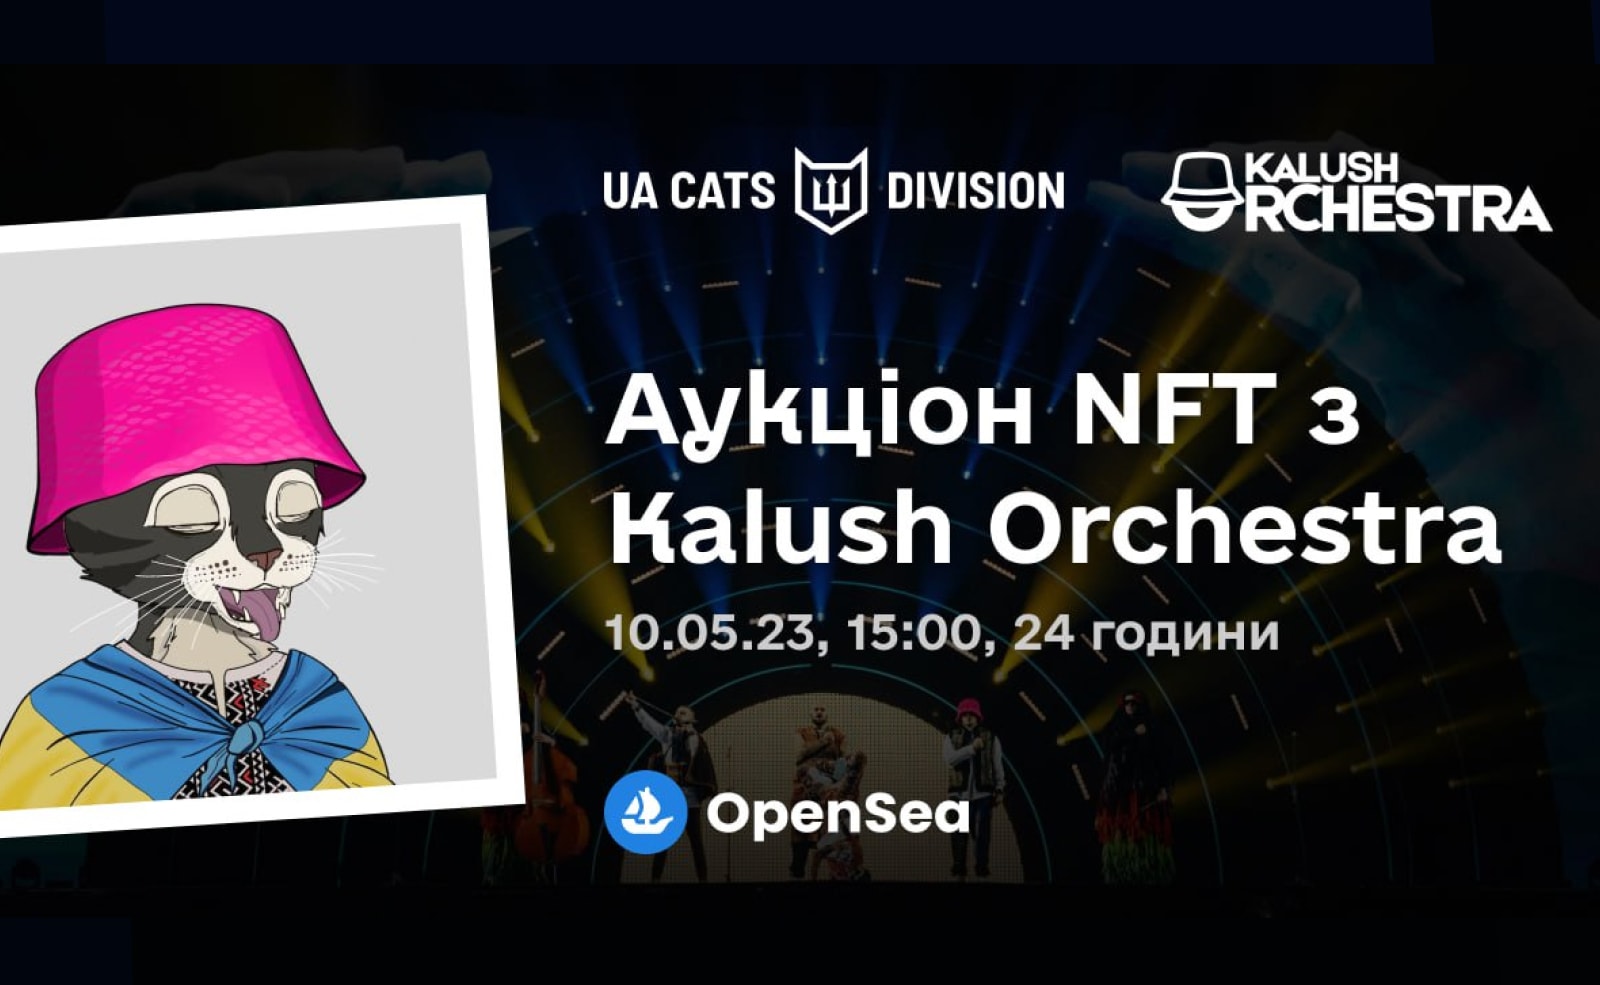 Kalush Orchestra подписал уникальный NFT из коллекции UACatsDivision. Его продадут в рамках аукциона для спасения животных. Заглавный коллаж новости.